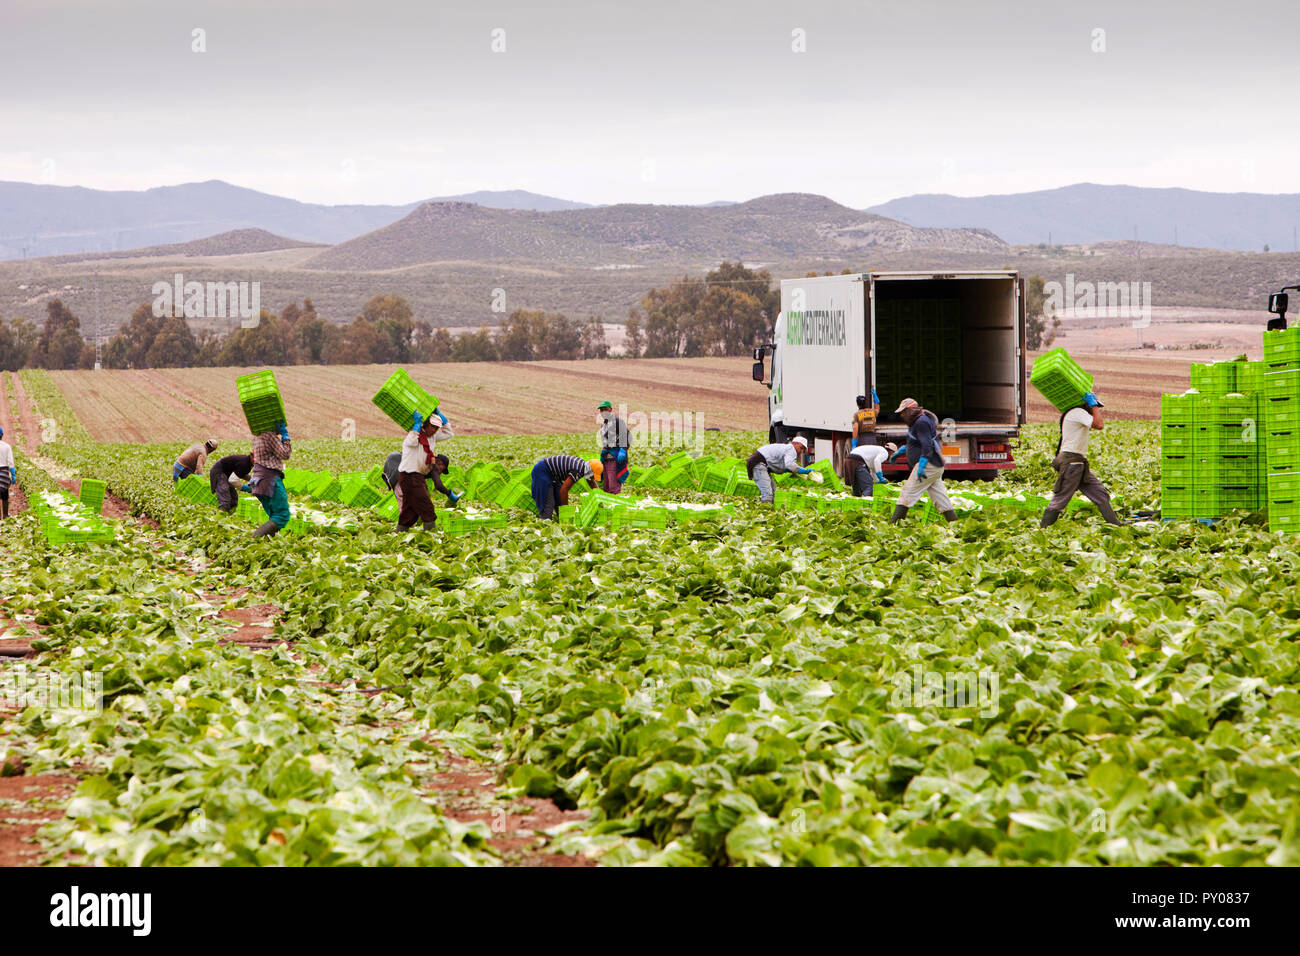 Kopfsalat Fruchtarten in einem Feld in der Nähe von Sorbas im südlichen Spanien geerntet wird. In dieser trockenen Teil Spaniens, viel landwirtschaftliche Produktion wäre ohne Bewässerung, Wasser, ist immer nur schwierig zu werden. Stockfoto